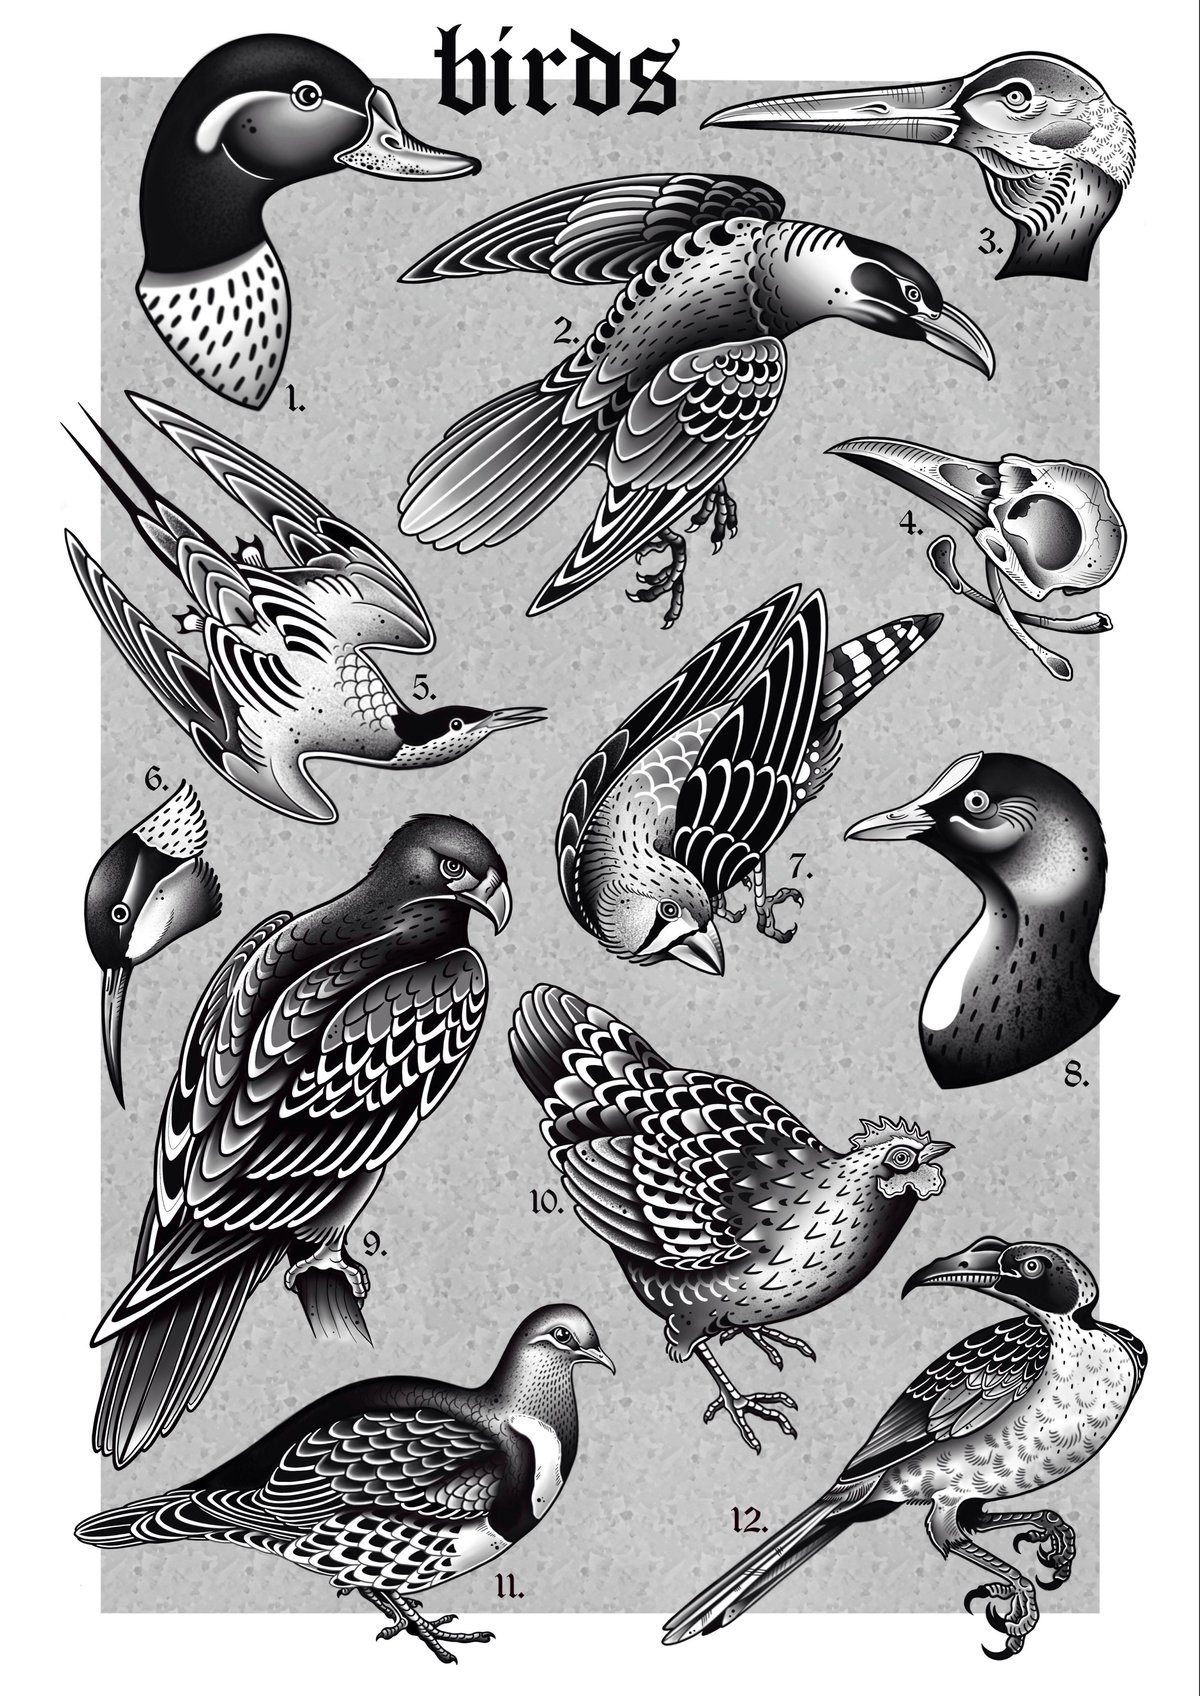 BIRDS - print A3